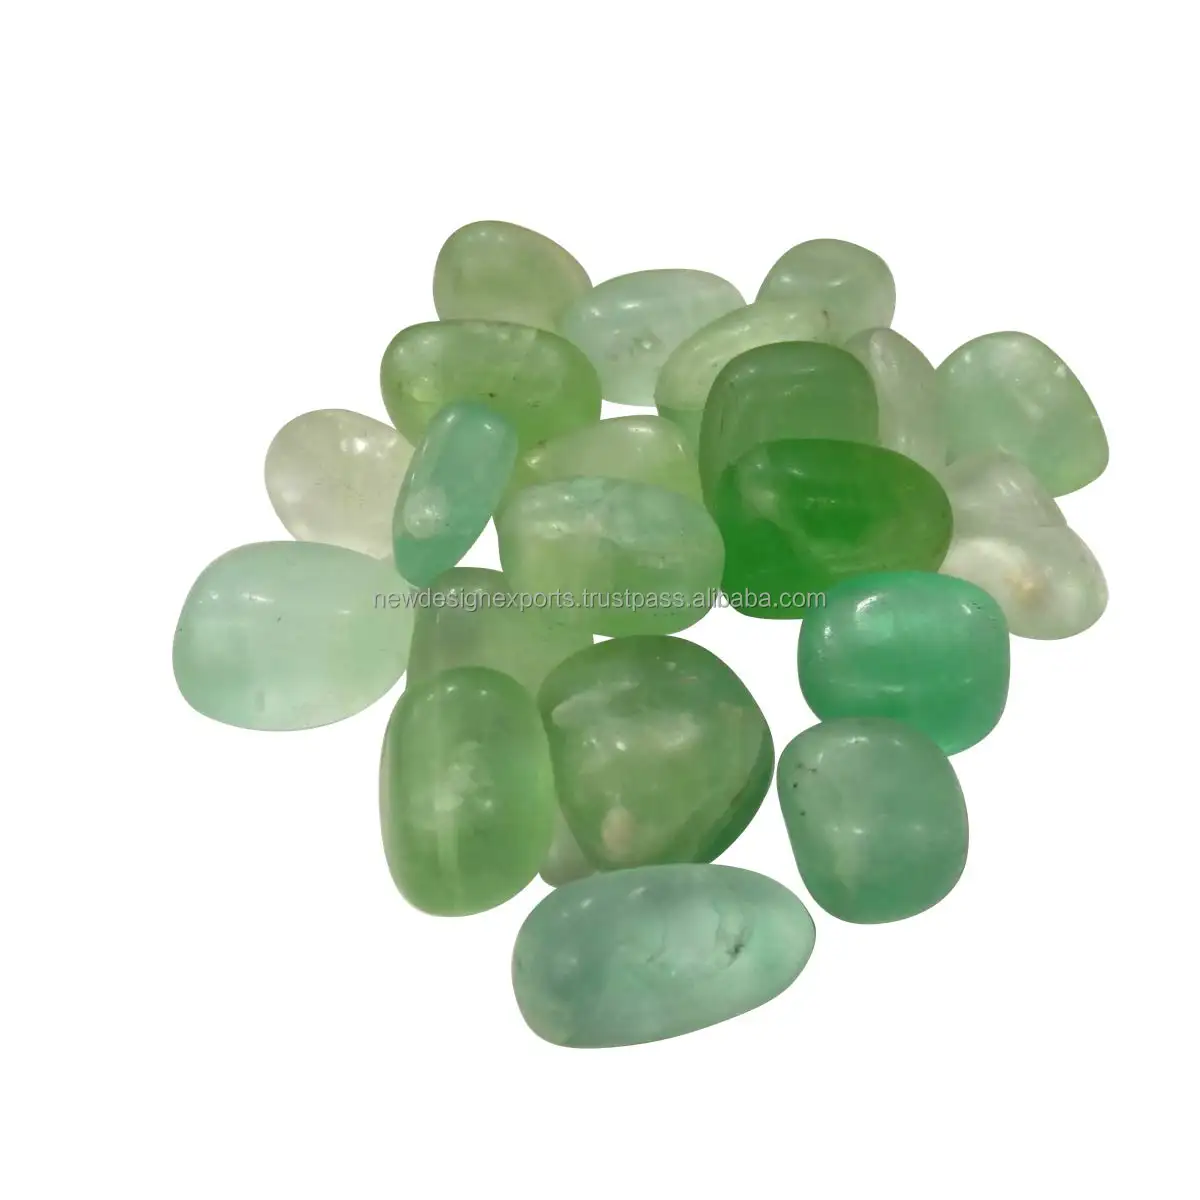 Pedra de borracha de flúor verde 100, pedras naturais de cristal gm, pedras de pebre cobertas para cura de reiki